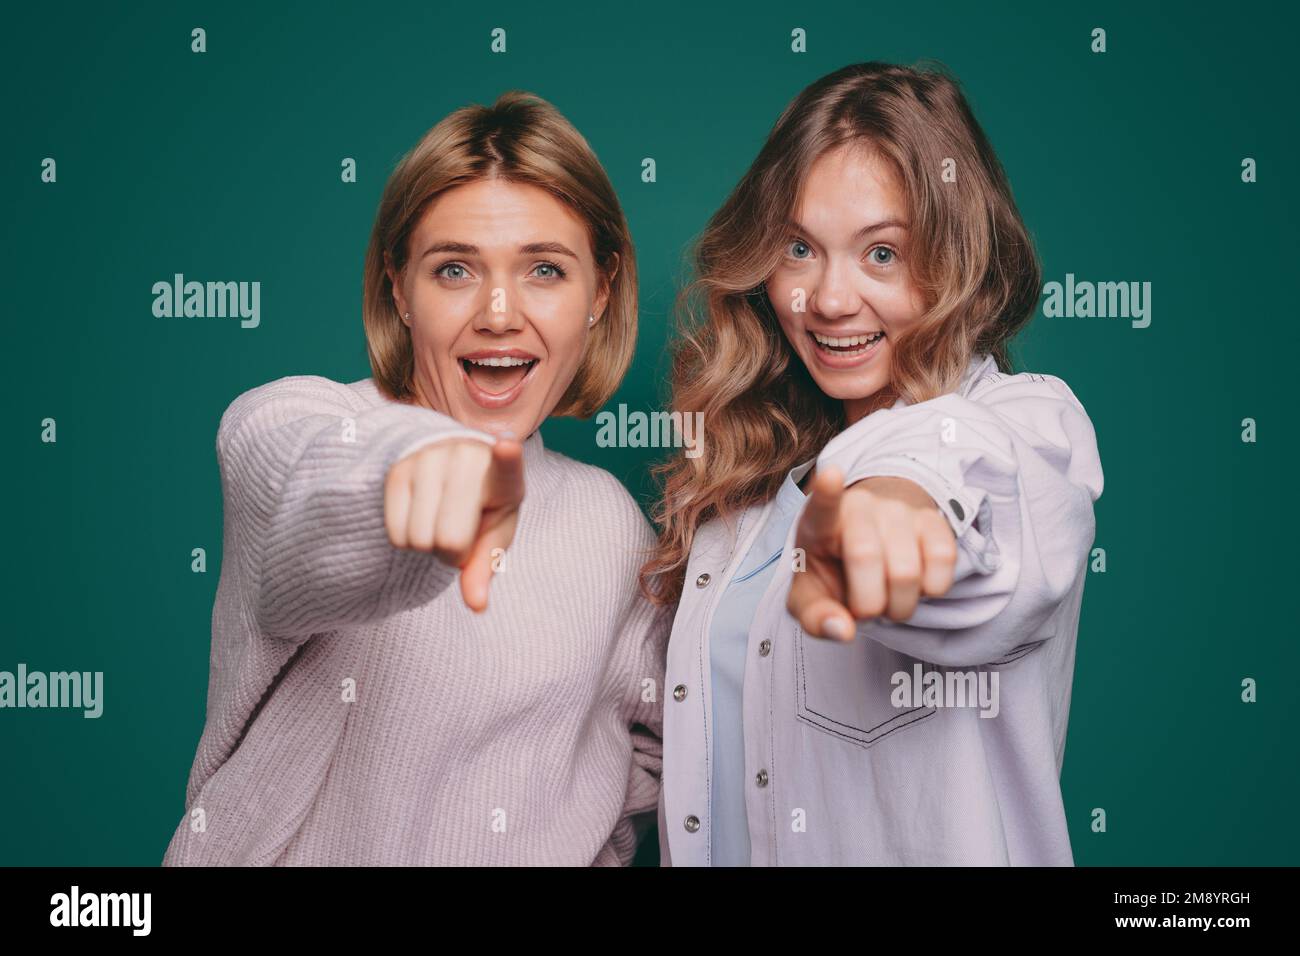 Ein Bild von zwei Schwestern, die laut lachen und mit dem Finger auf die Kamera zeigen. Genießen Sie jeden Moment. Stockfoto